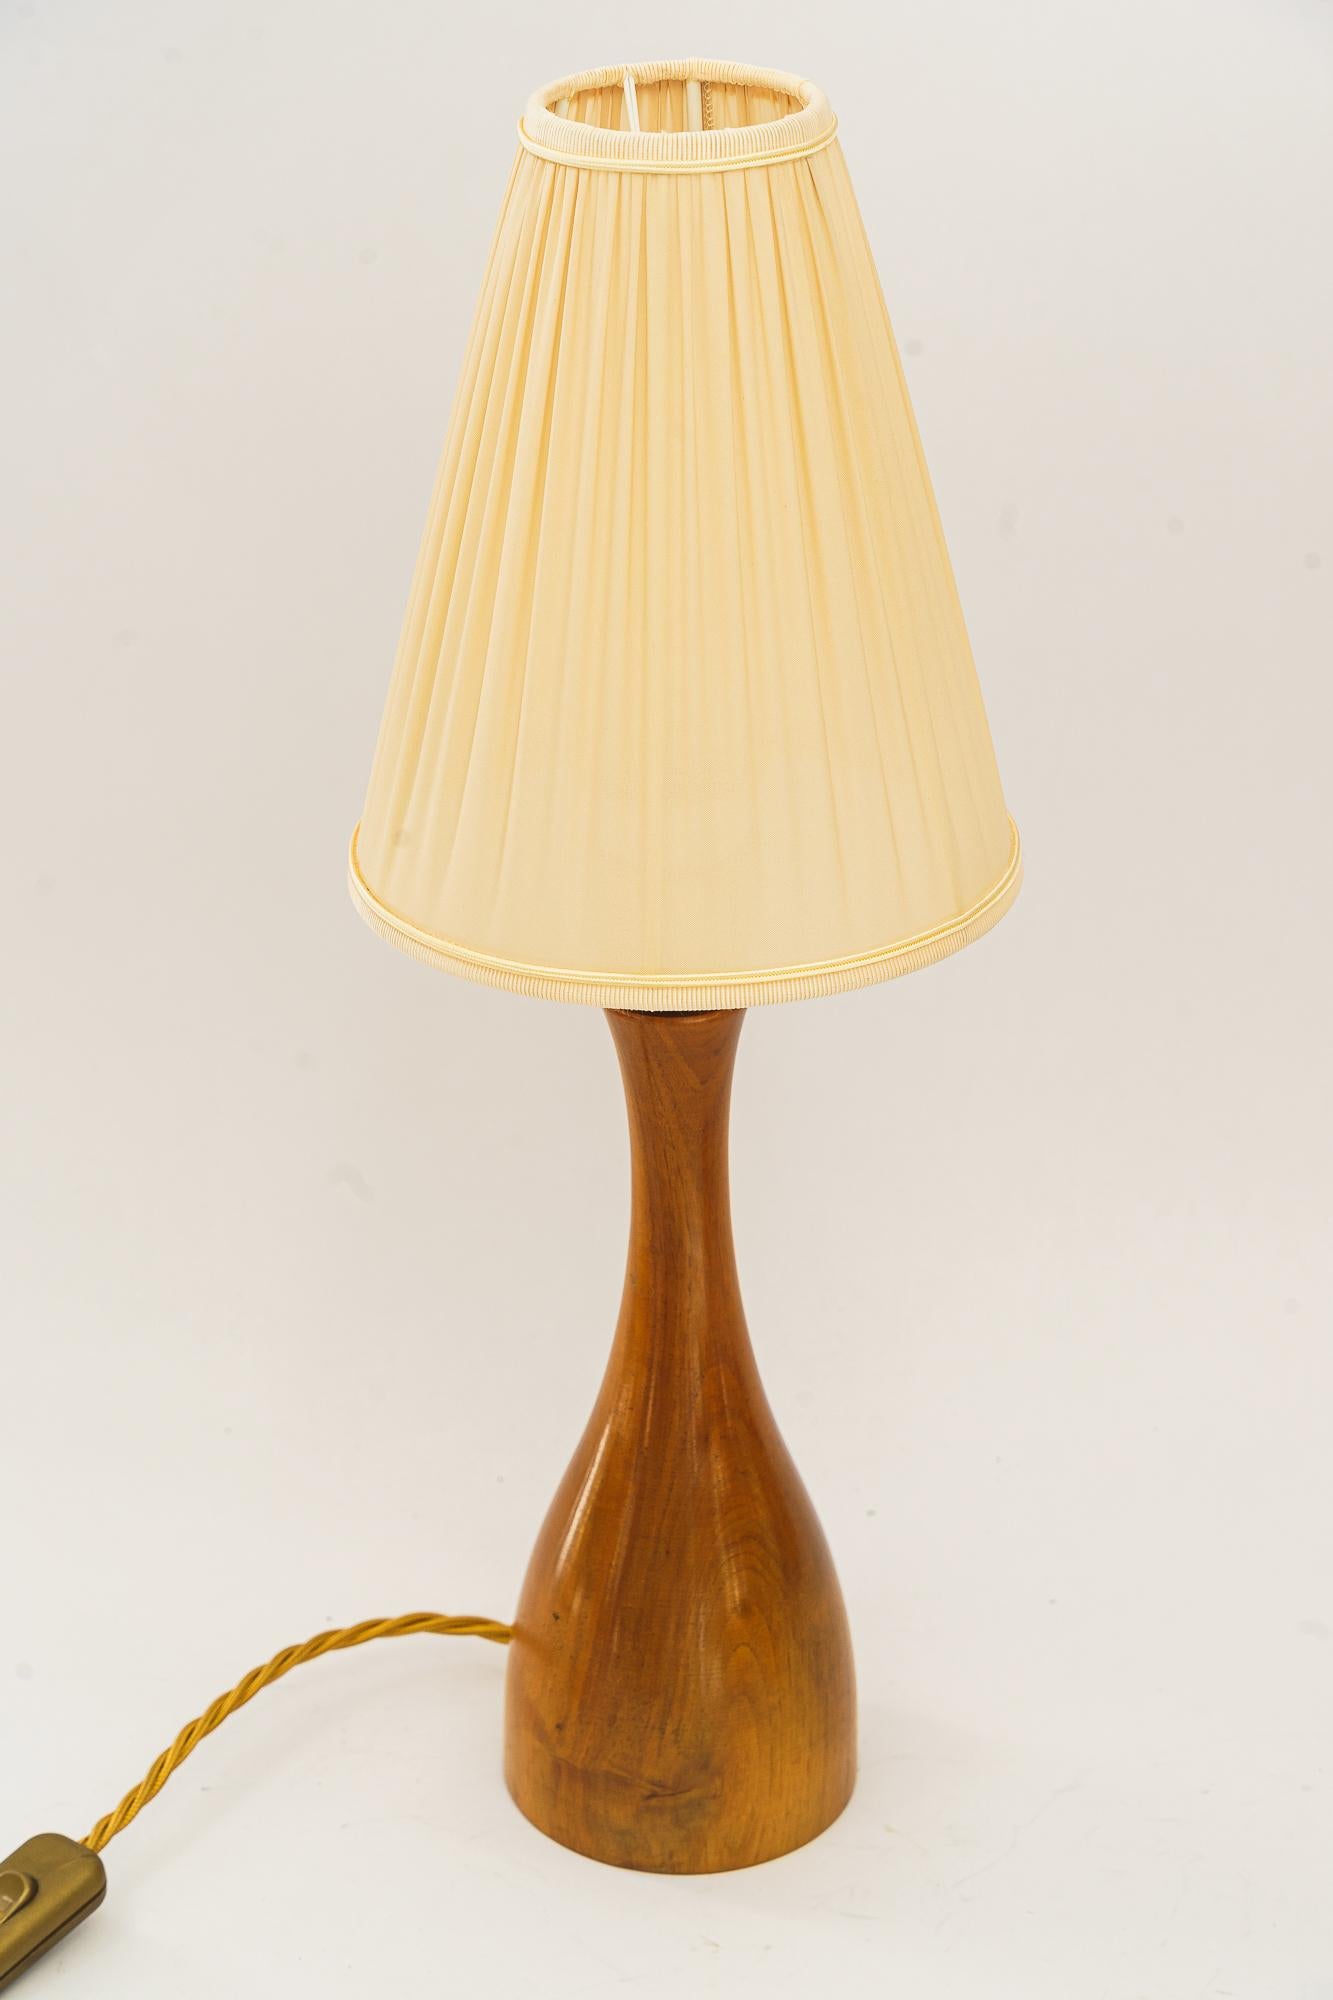 Rupert Nikoll lampe de table en bois de cerisier avec abat-jour en tissu vienne vers 1950
Bois poli
Laiton poli et émaillé au four
L'abat-jour en tissu est remplacé (neuf).